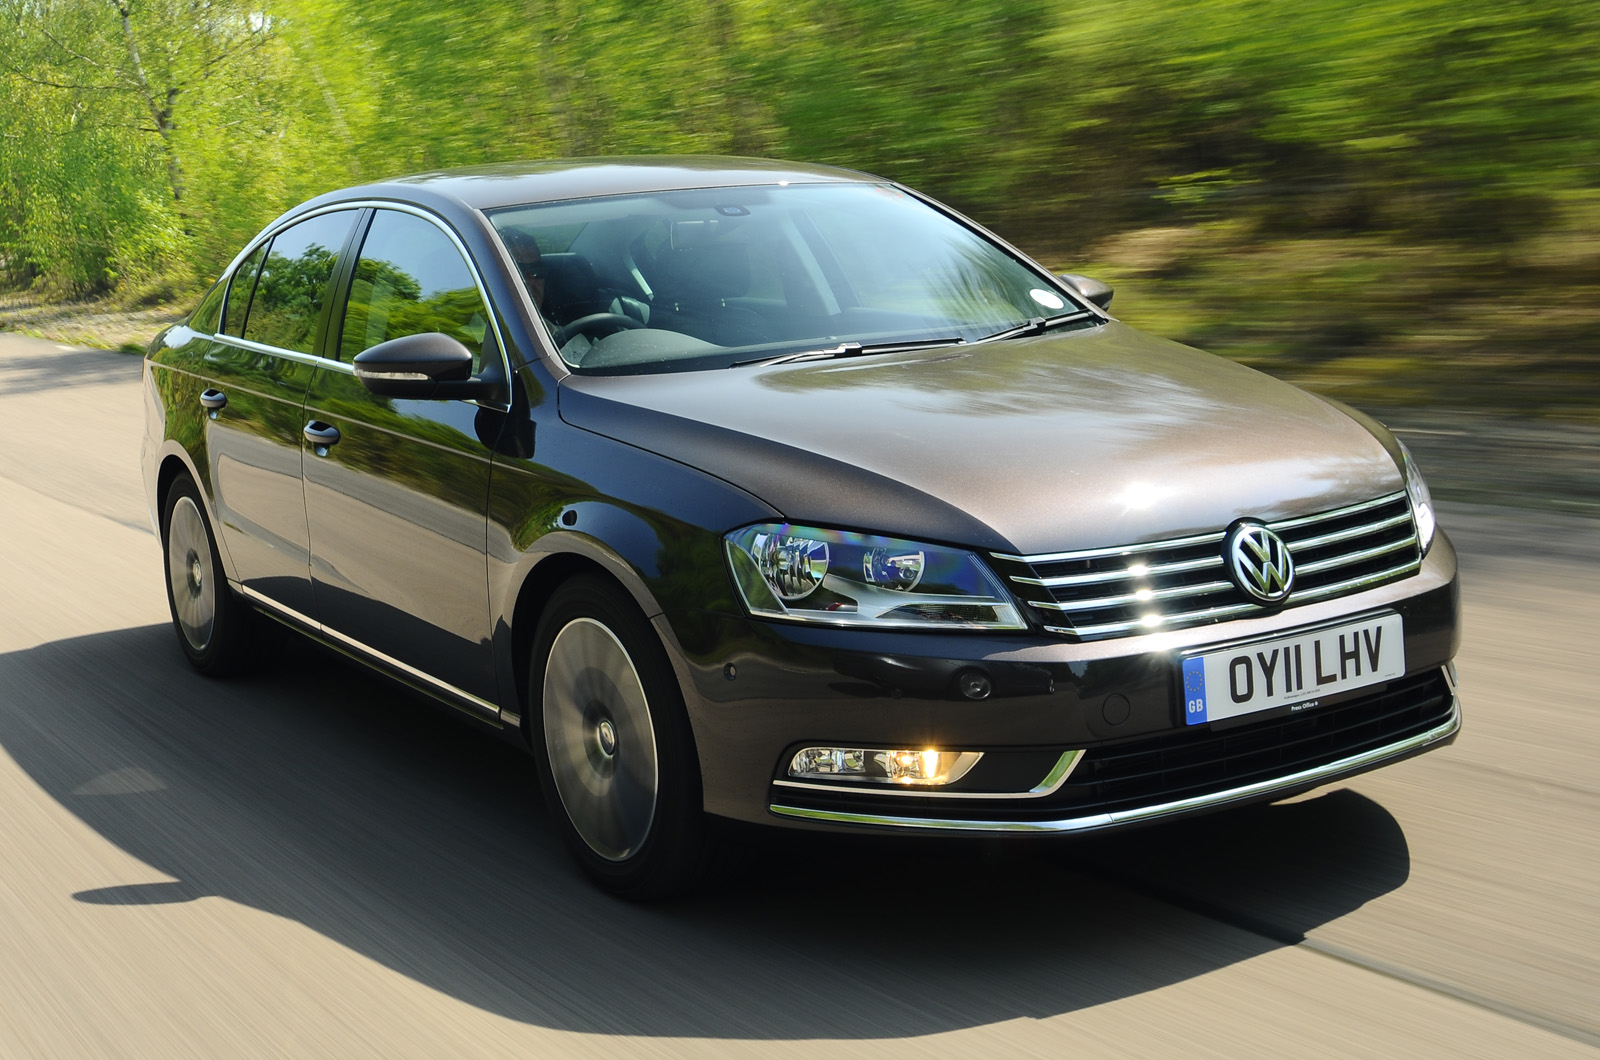 Used Volkswagen Passat 2011-2014 review